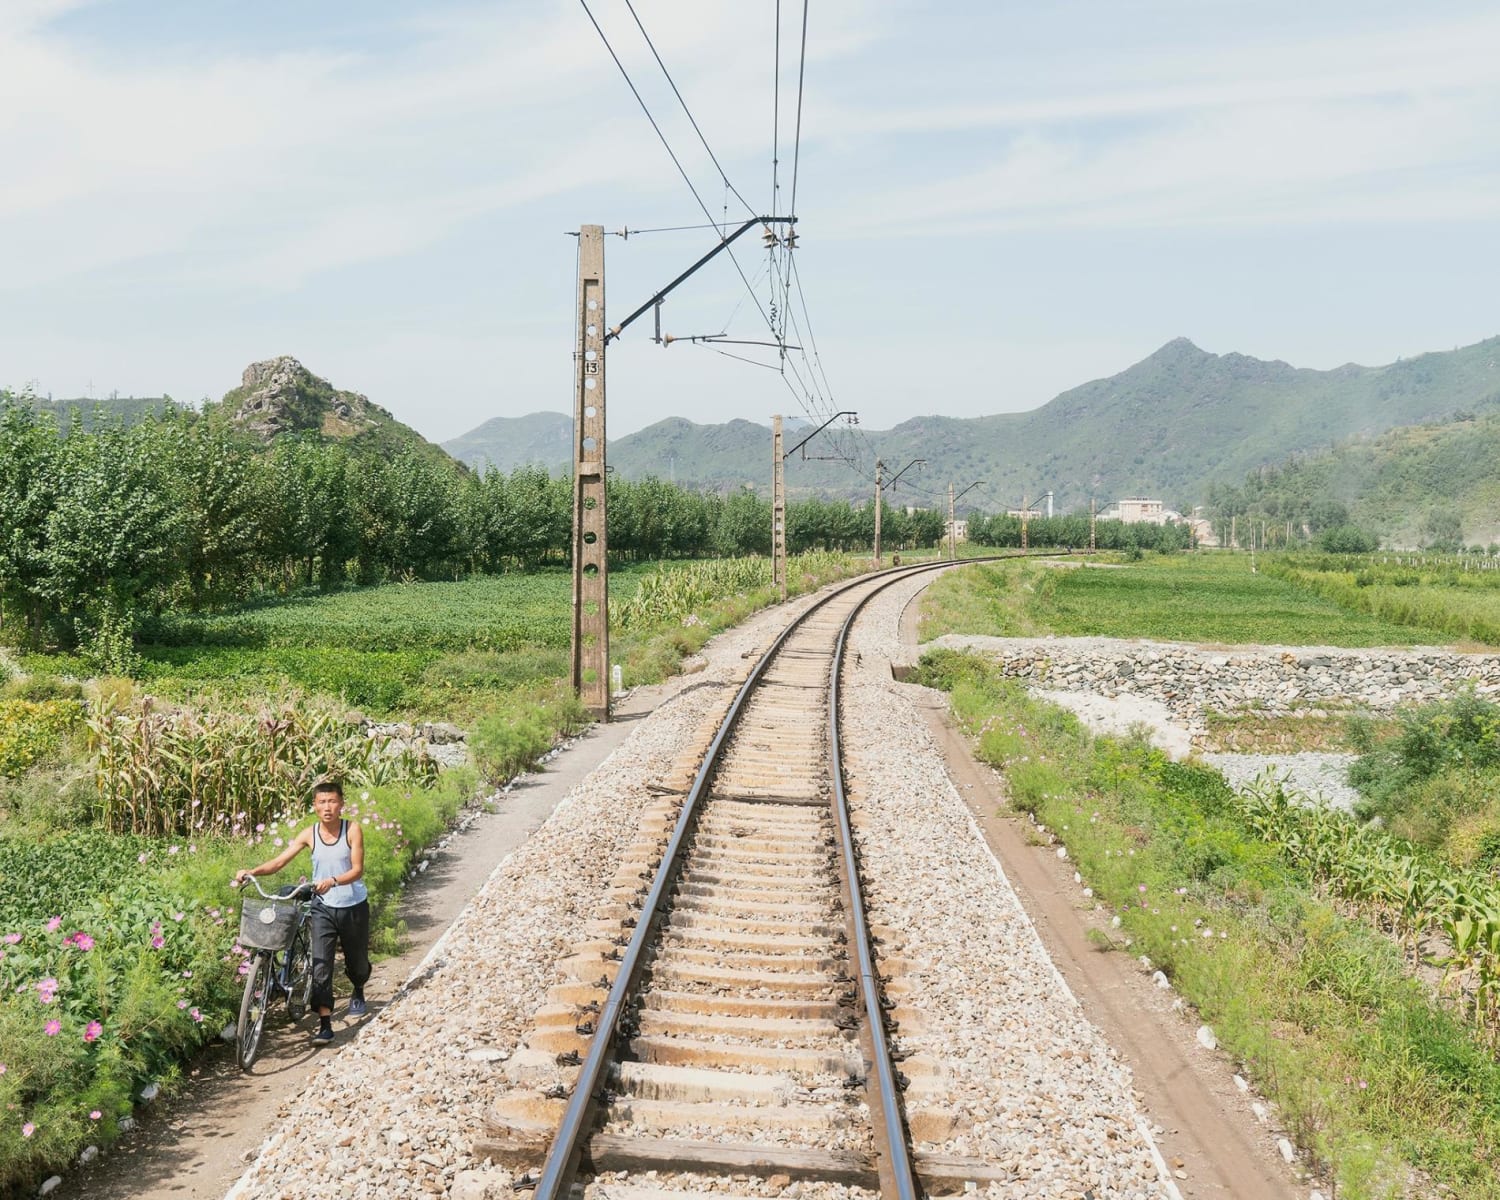 Take a train through North Korea's rarely seen countryside